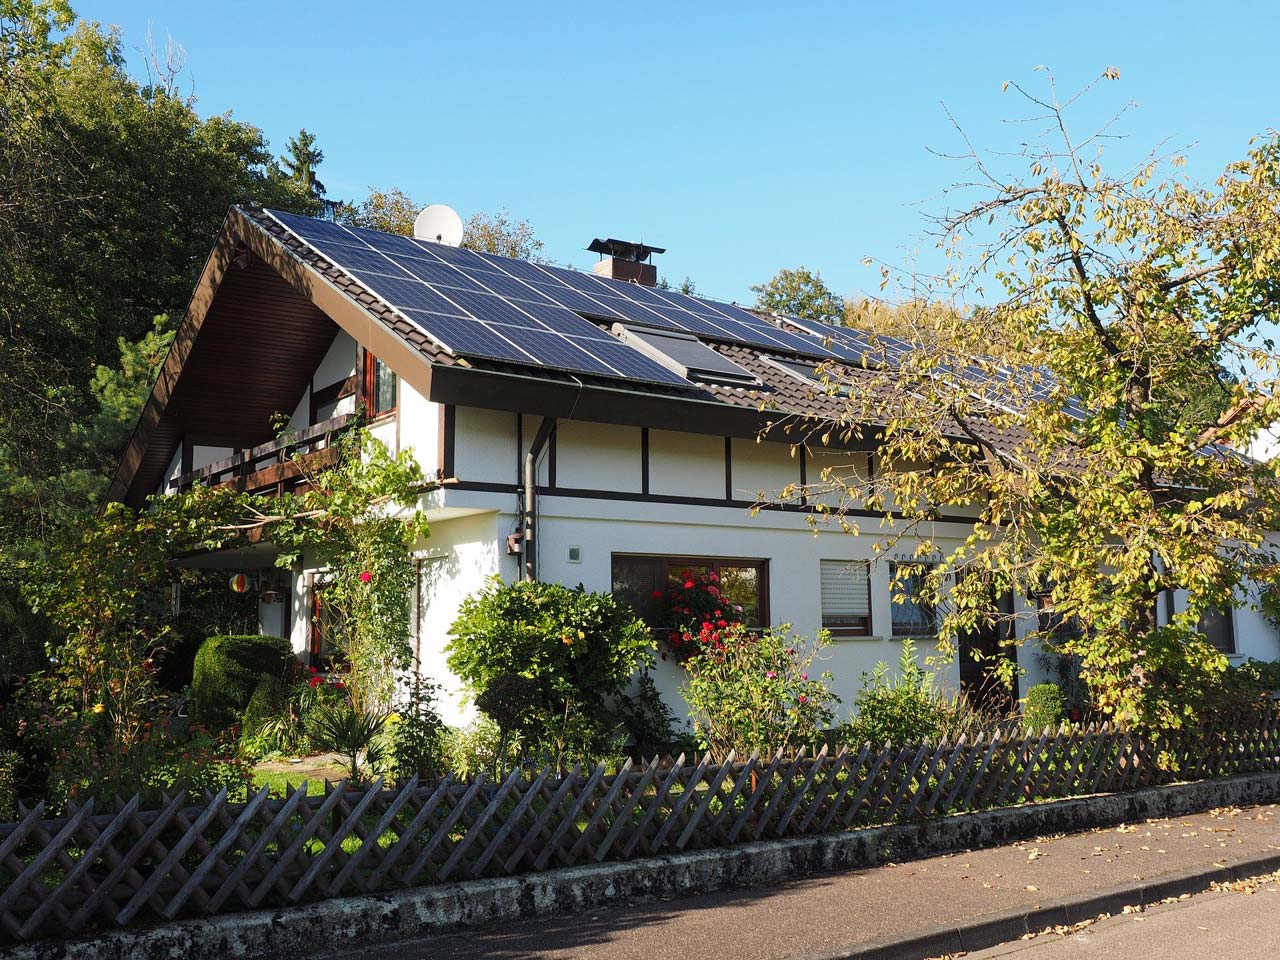 solaranlage-photovoltaik-ratgeber-immobilie-haus-erneuerbare-energie-sanierung-modernisierung-haus-doppelhaus